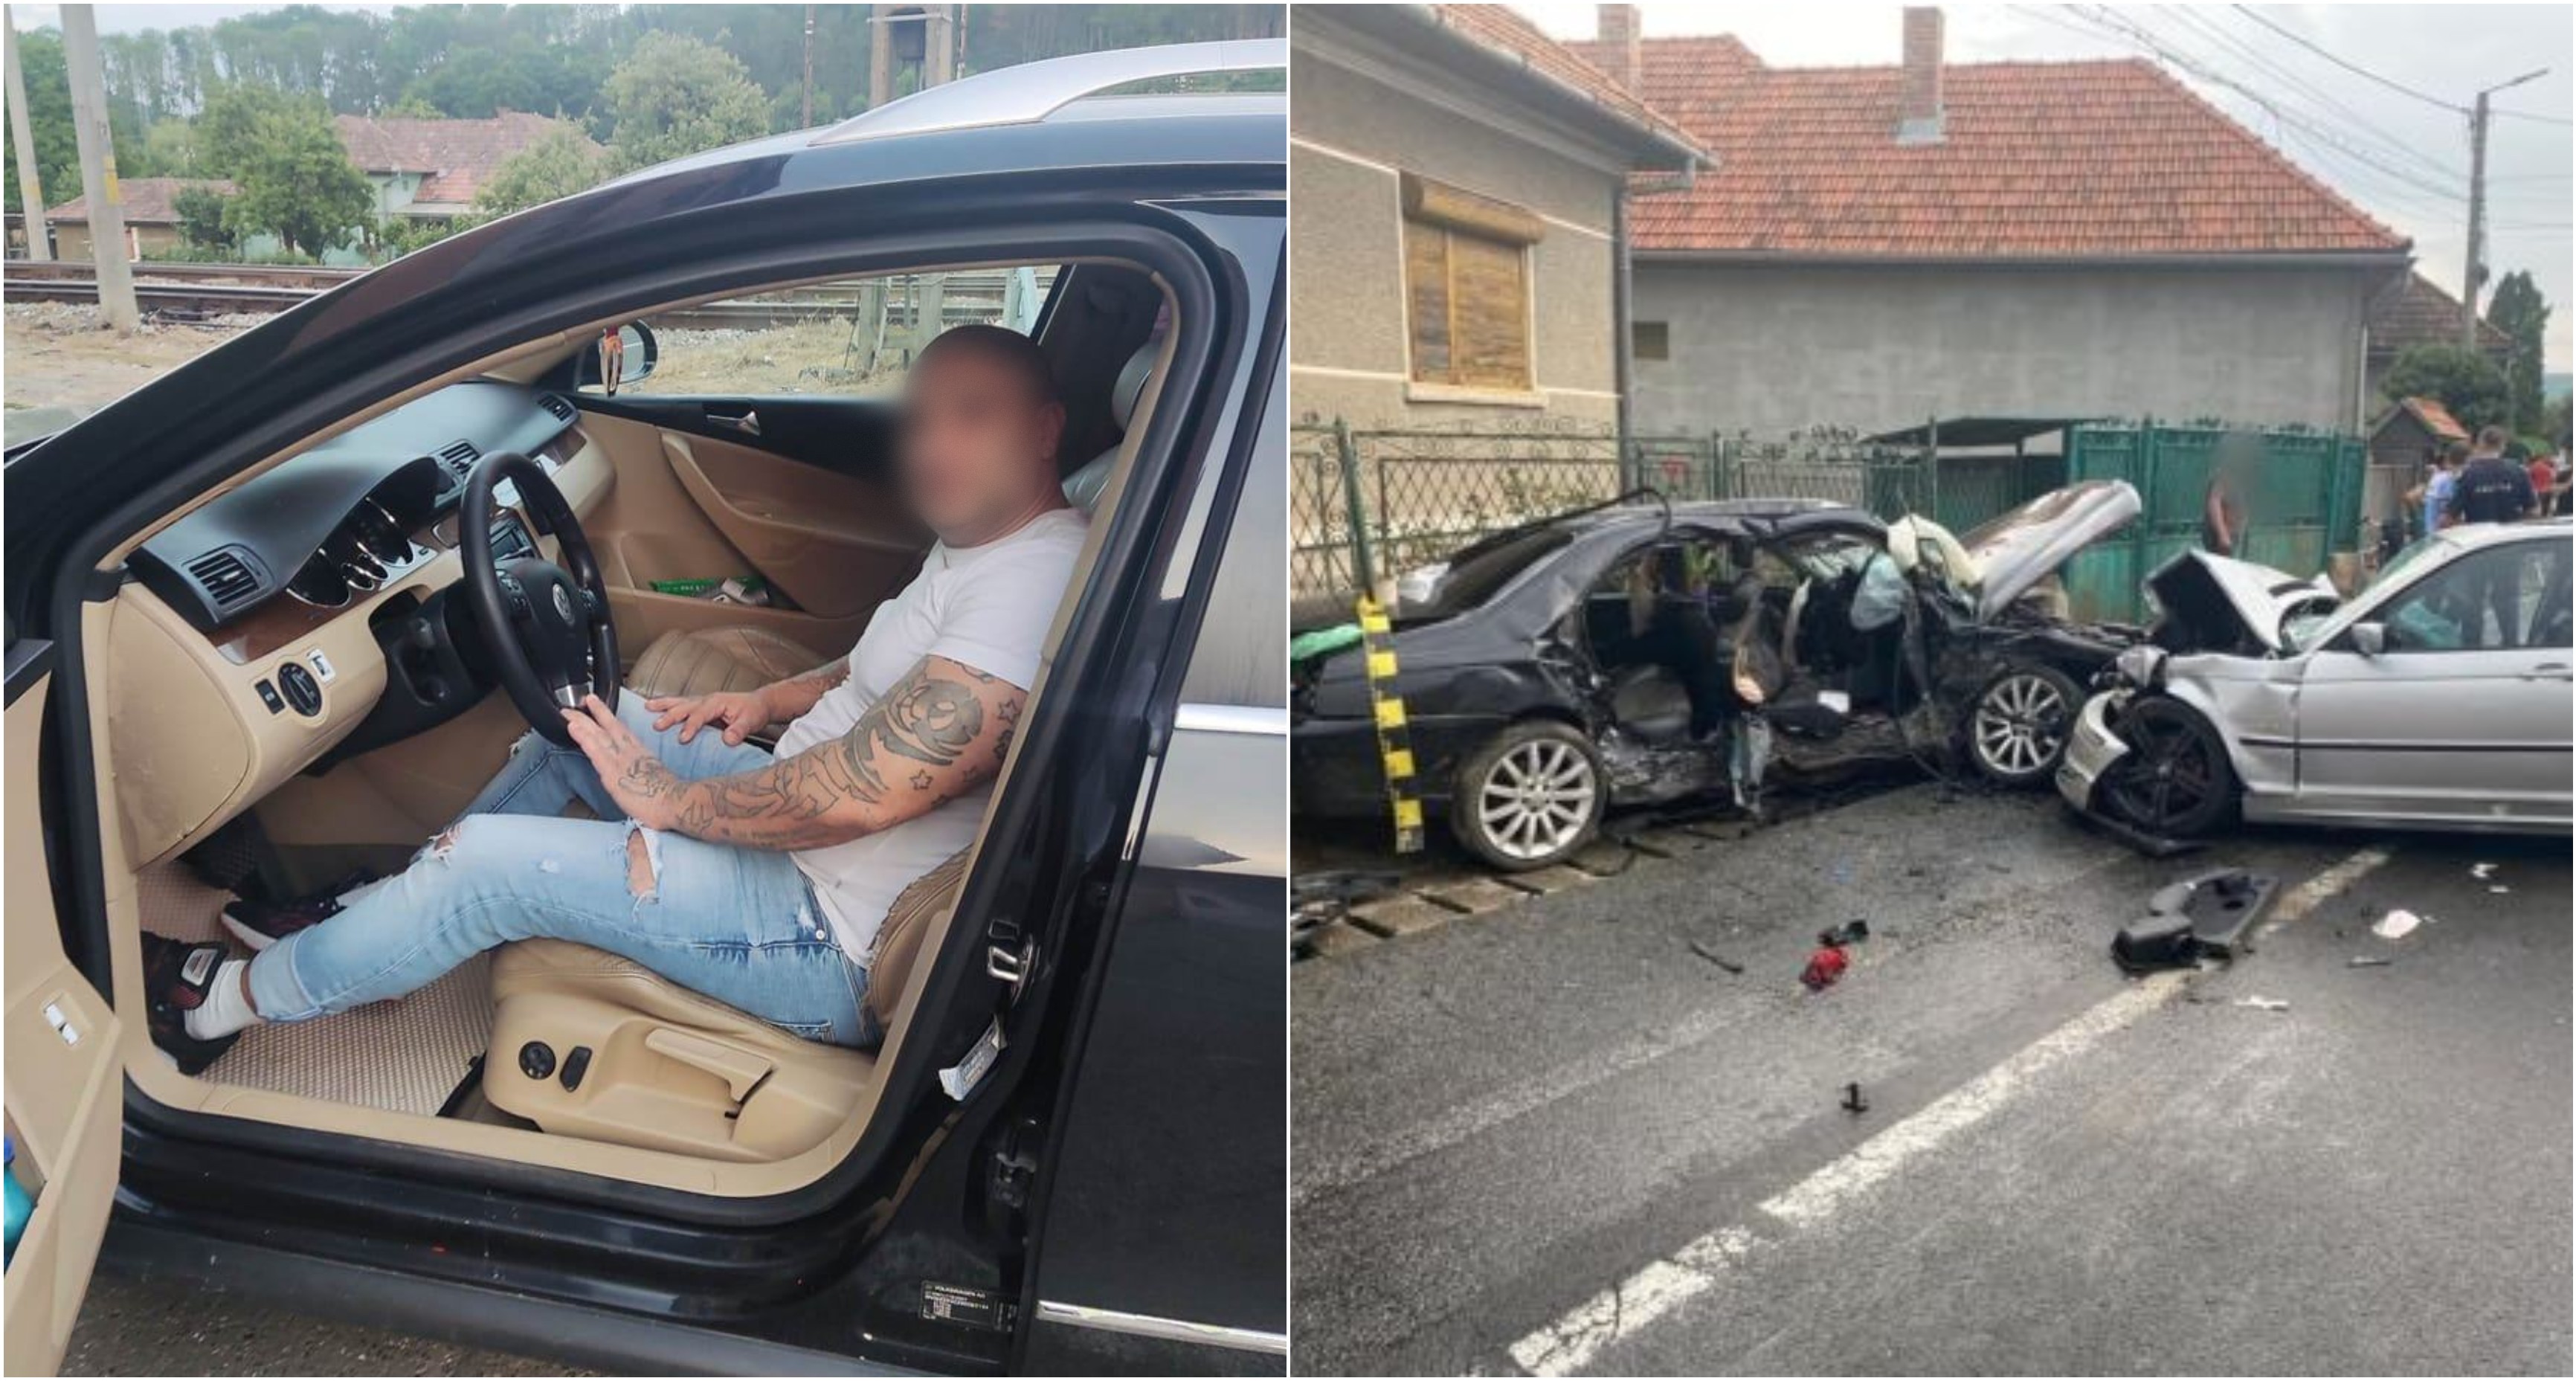 Șoferul care a provocat accidentul mortal din Căpușu Mare a mai fost condamnat pentru că a condus de 11 ori fără permis / Foto 1: Facebook, Foto 2: ISU Cluj